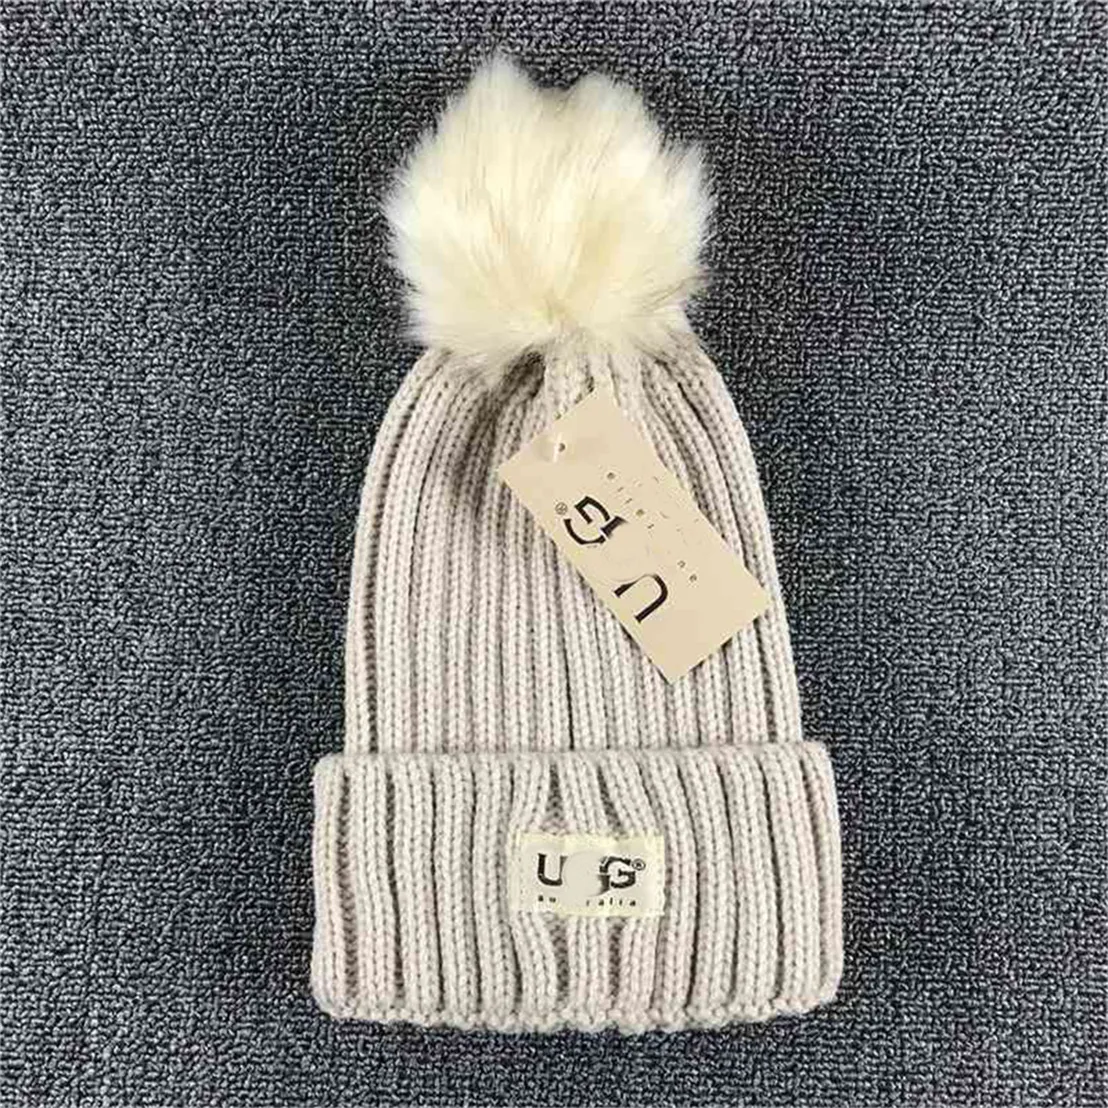 Nouvelle mode populaire tricoté chapeau de luxe bonnet hiver unisexe laine mélangée chapeaux G-16